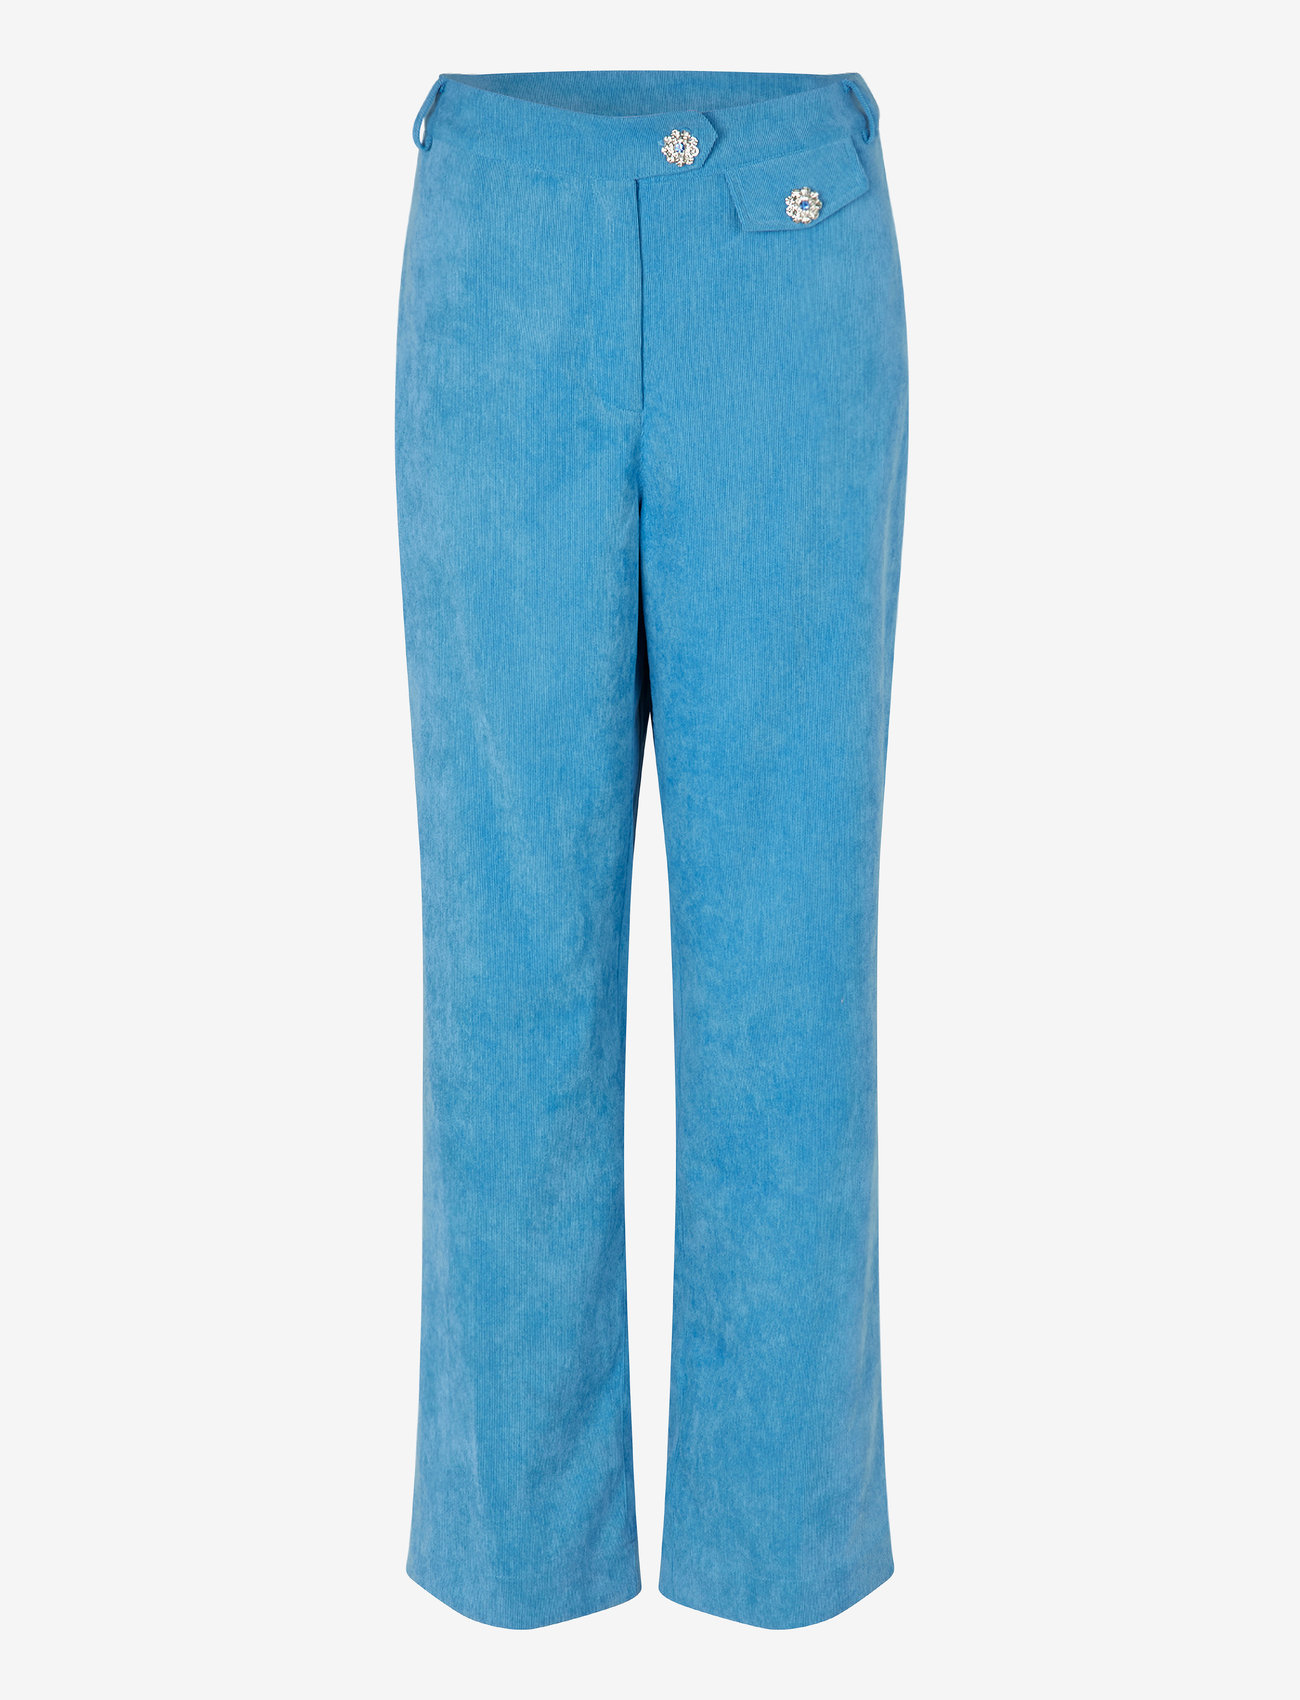 Cras - Celinecras Pants - bukser med lige ben - azure blue - 0